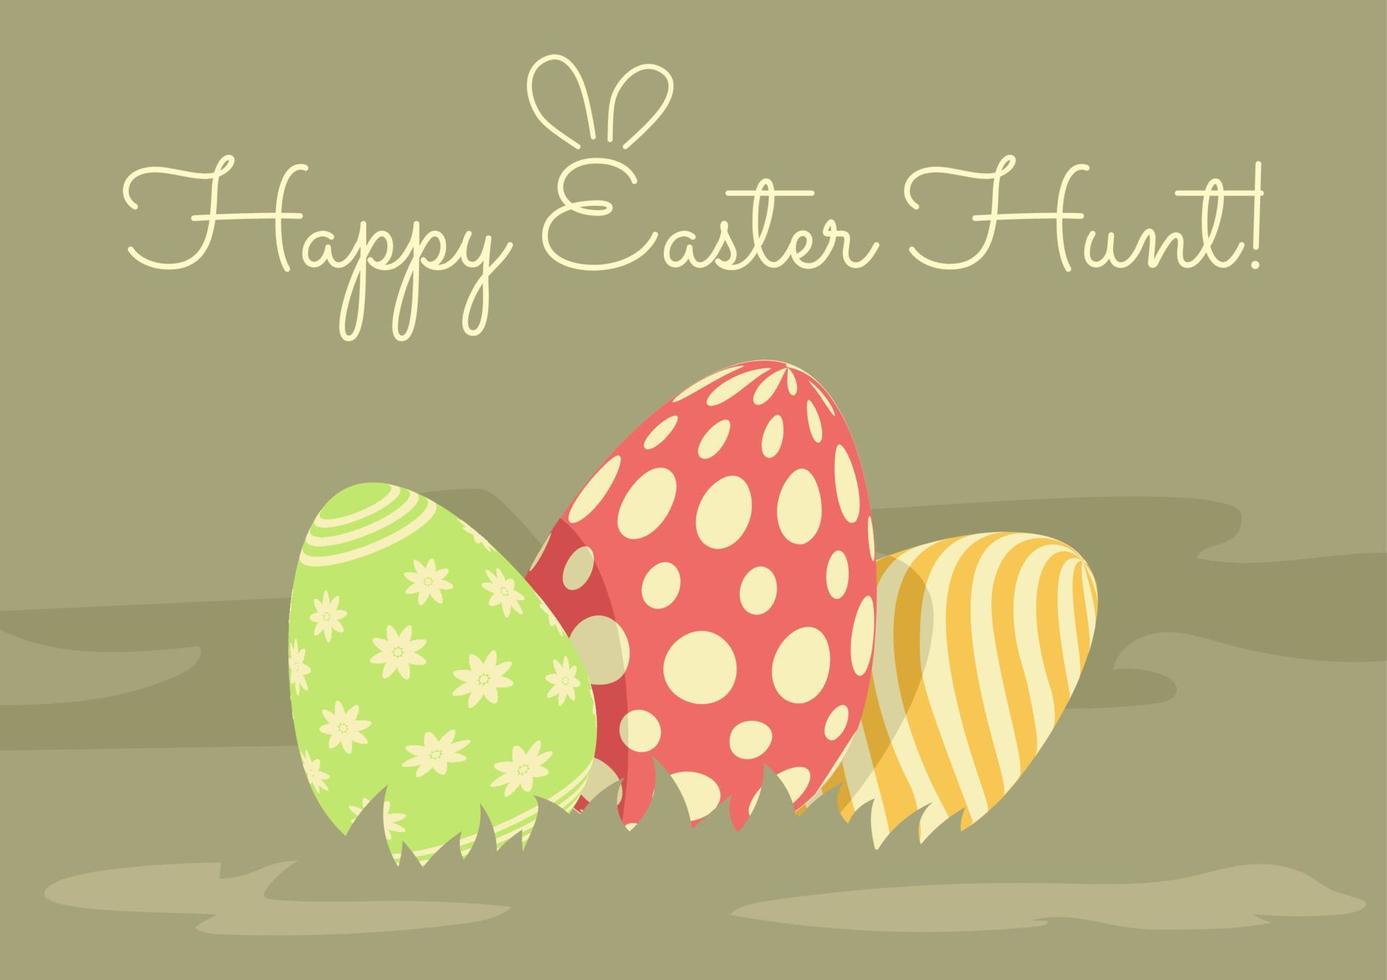 Ostern Urlaub Gruß mit dekoriert Eier im das Gras, Christentum traditionell Urlaub Einladung, Poster, Feier Karte. vektor